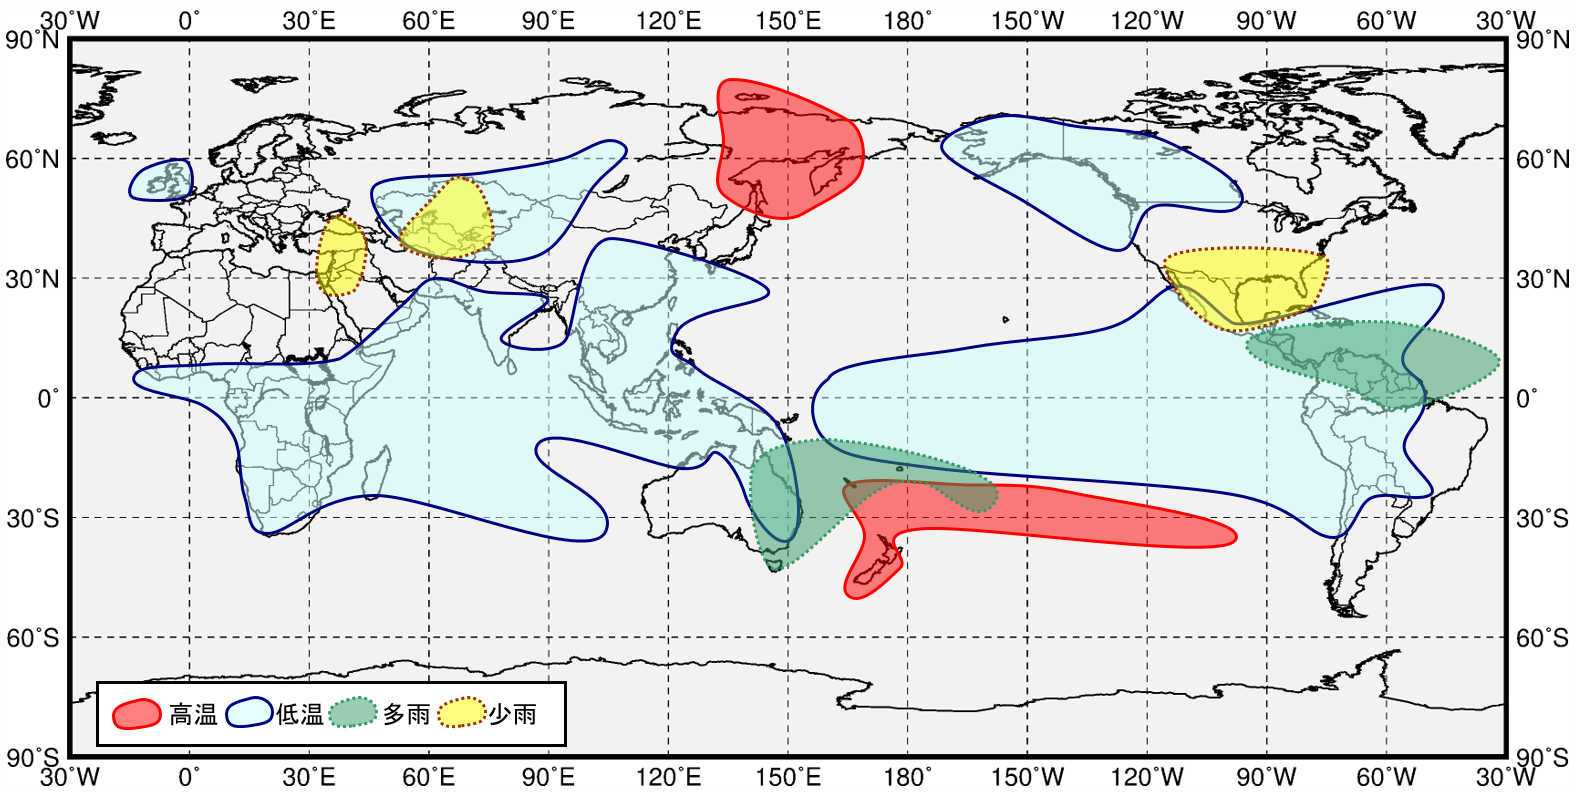 ラニーニャ現象発生時の世界の１２月から２月にかけての気温と降水量の傾向の分布図